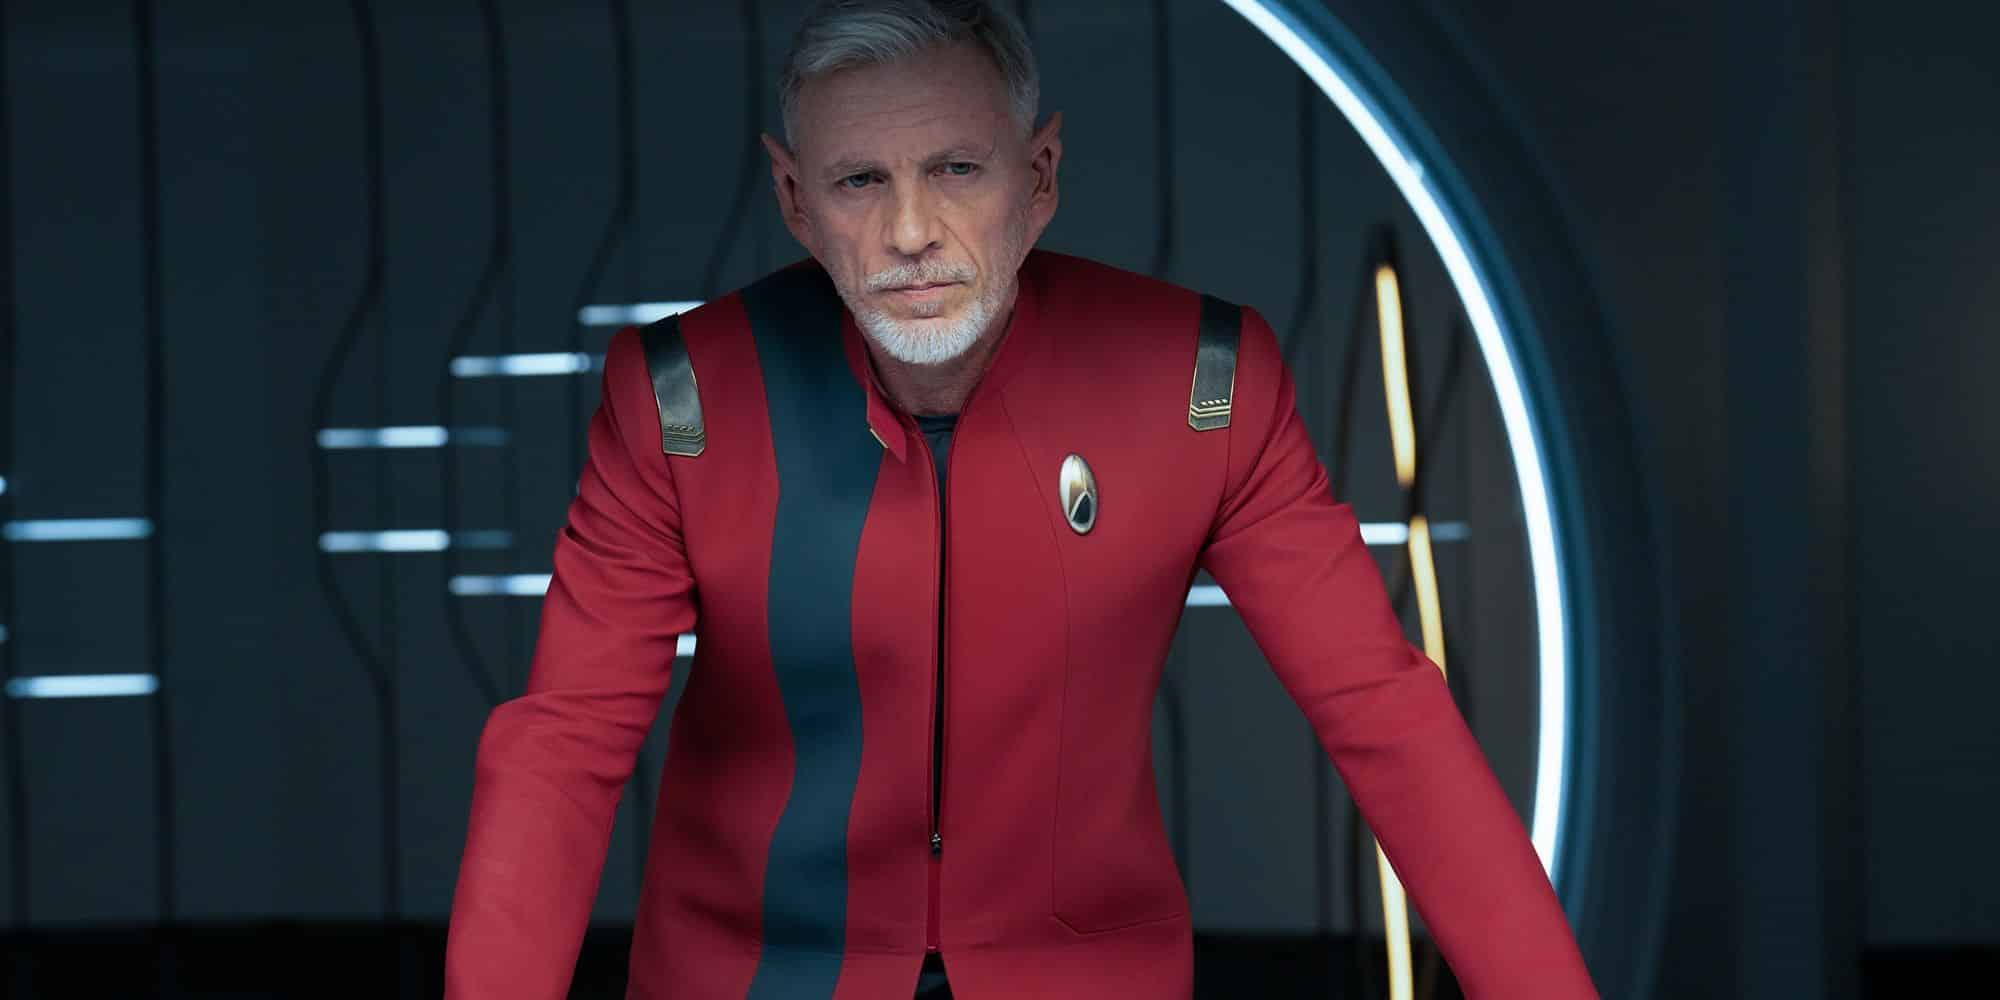 El comandante Rayner está a la cabecera de la mesa en Stark Trek: Discovery